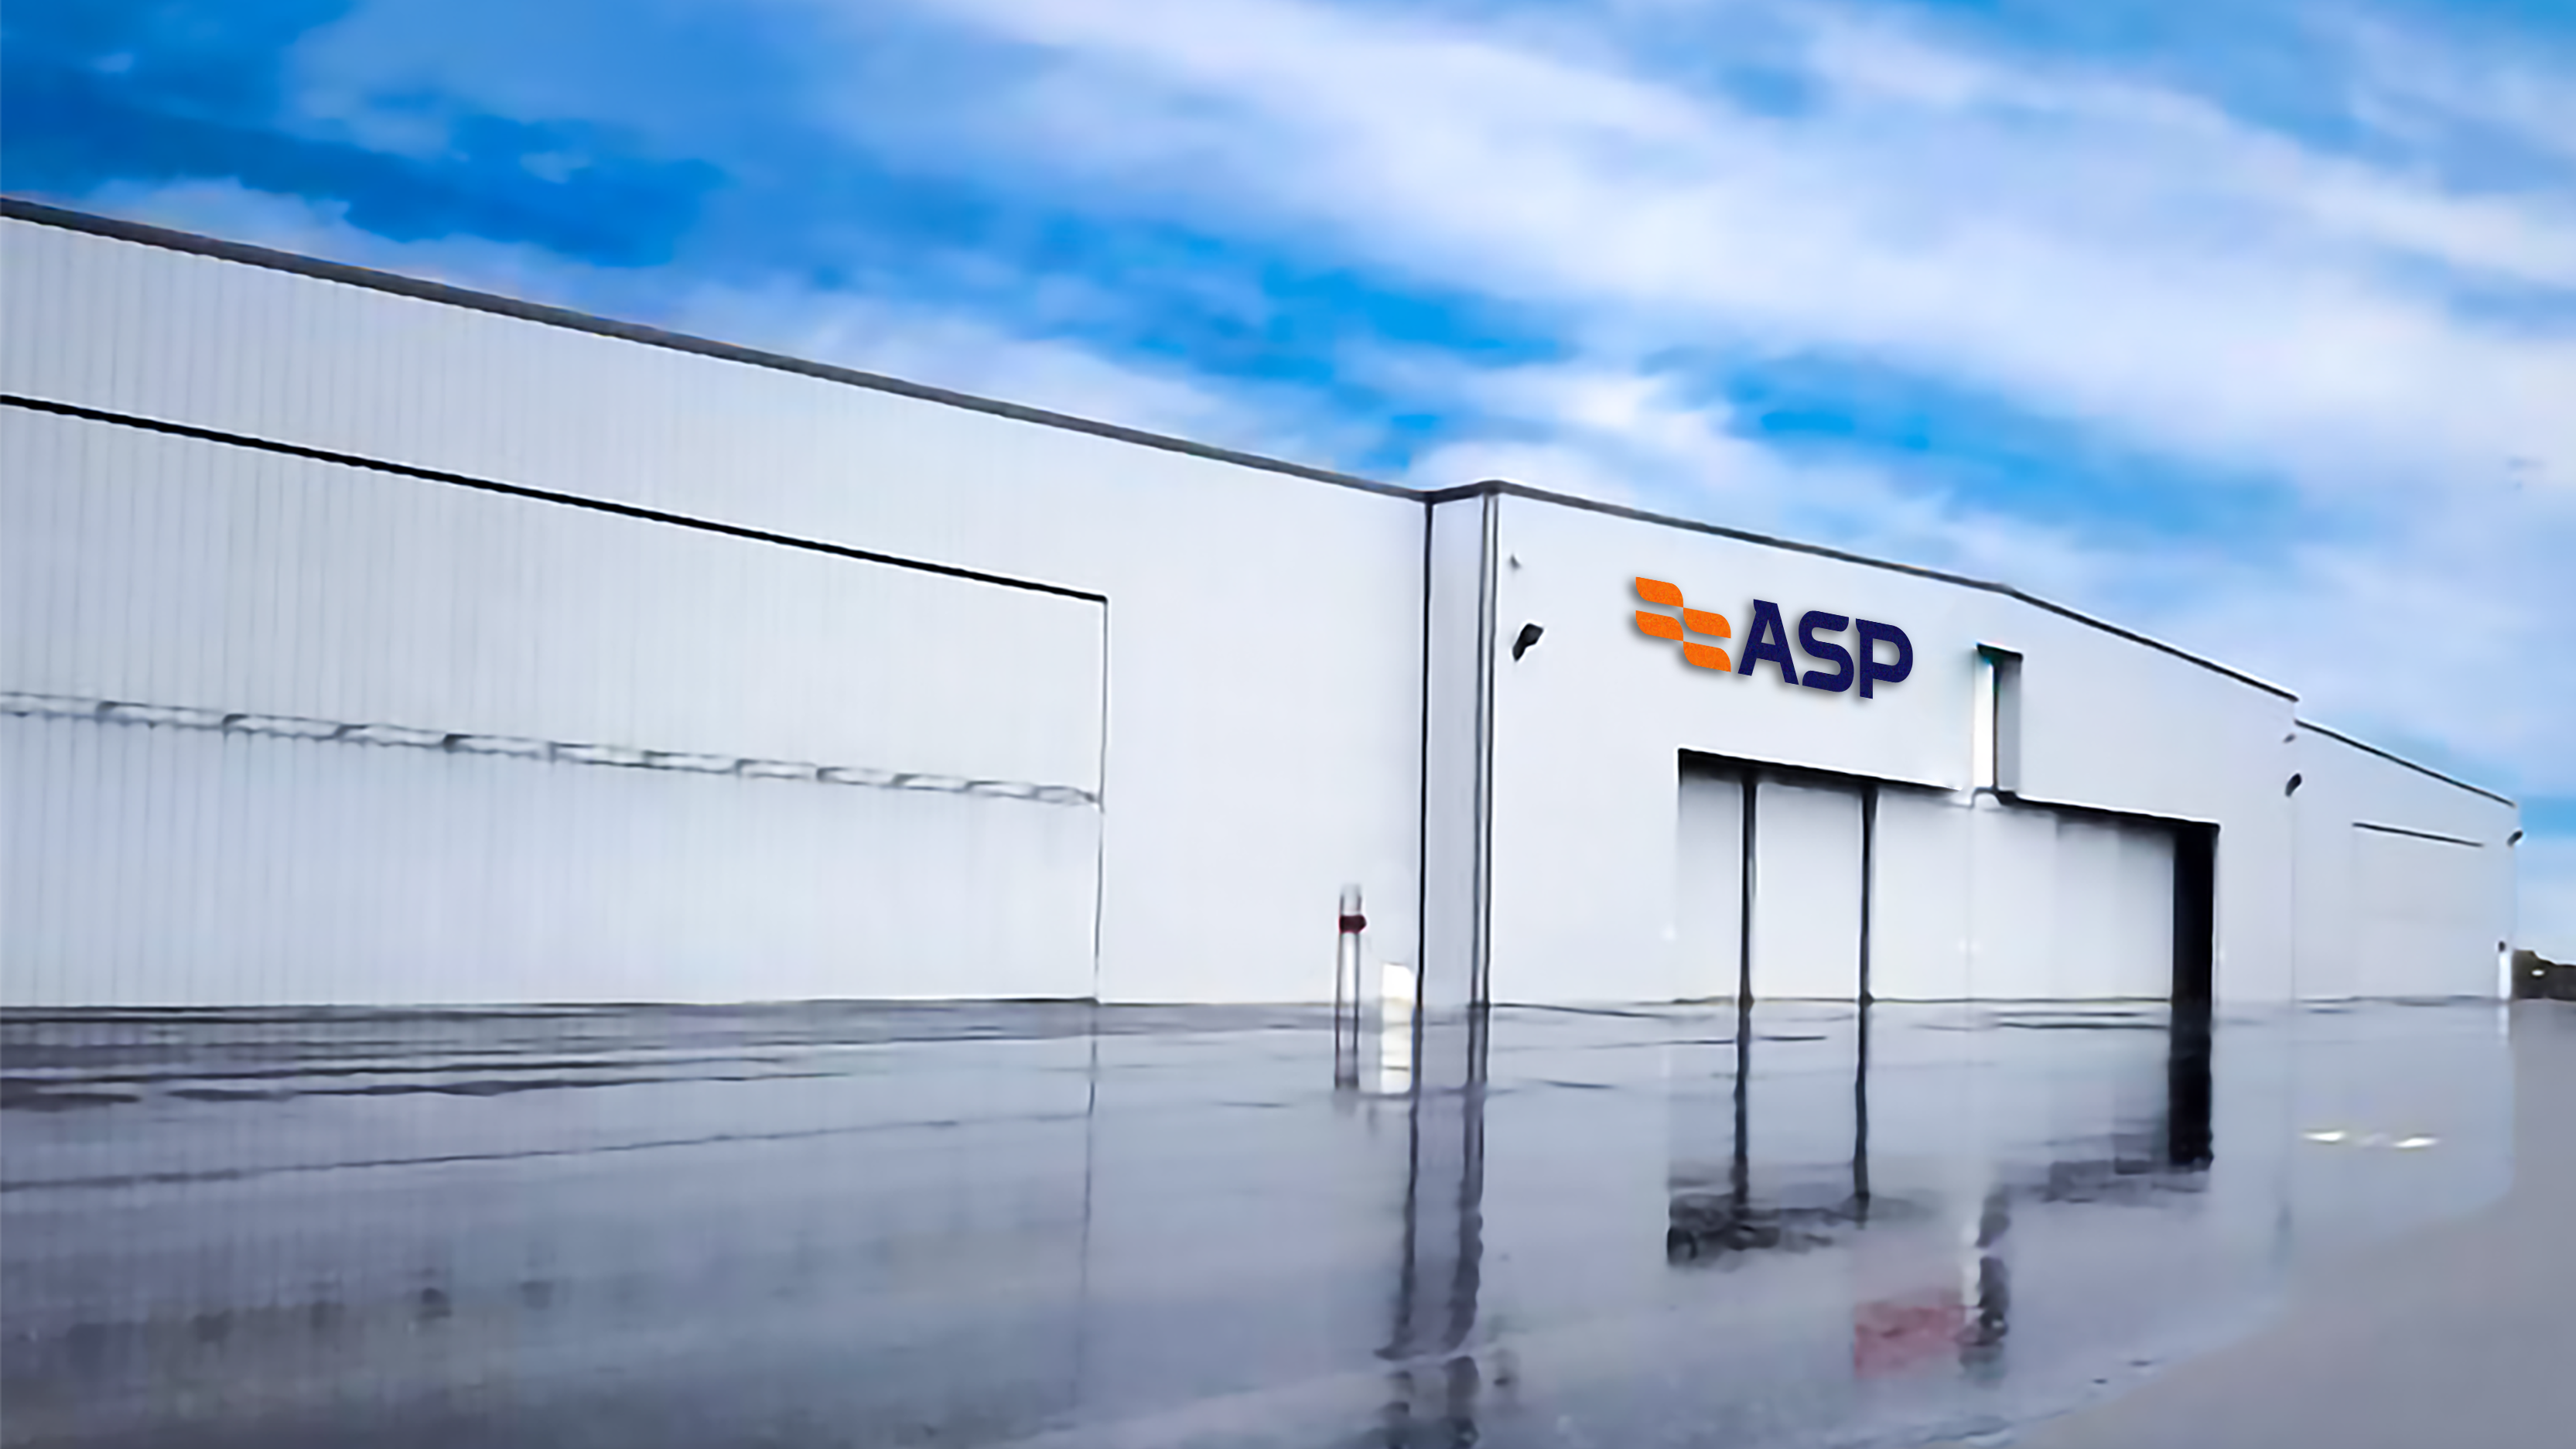 ASP Solutions Center (a.k.a., "The Hangar")